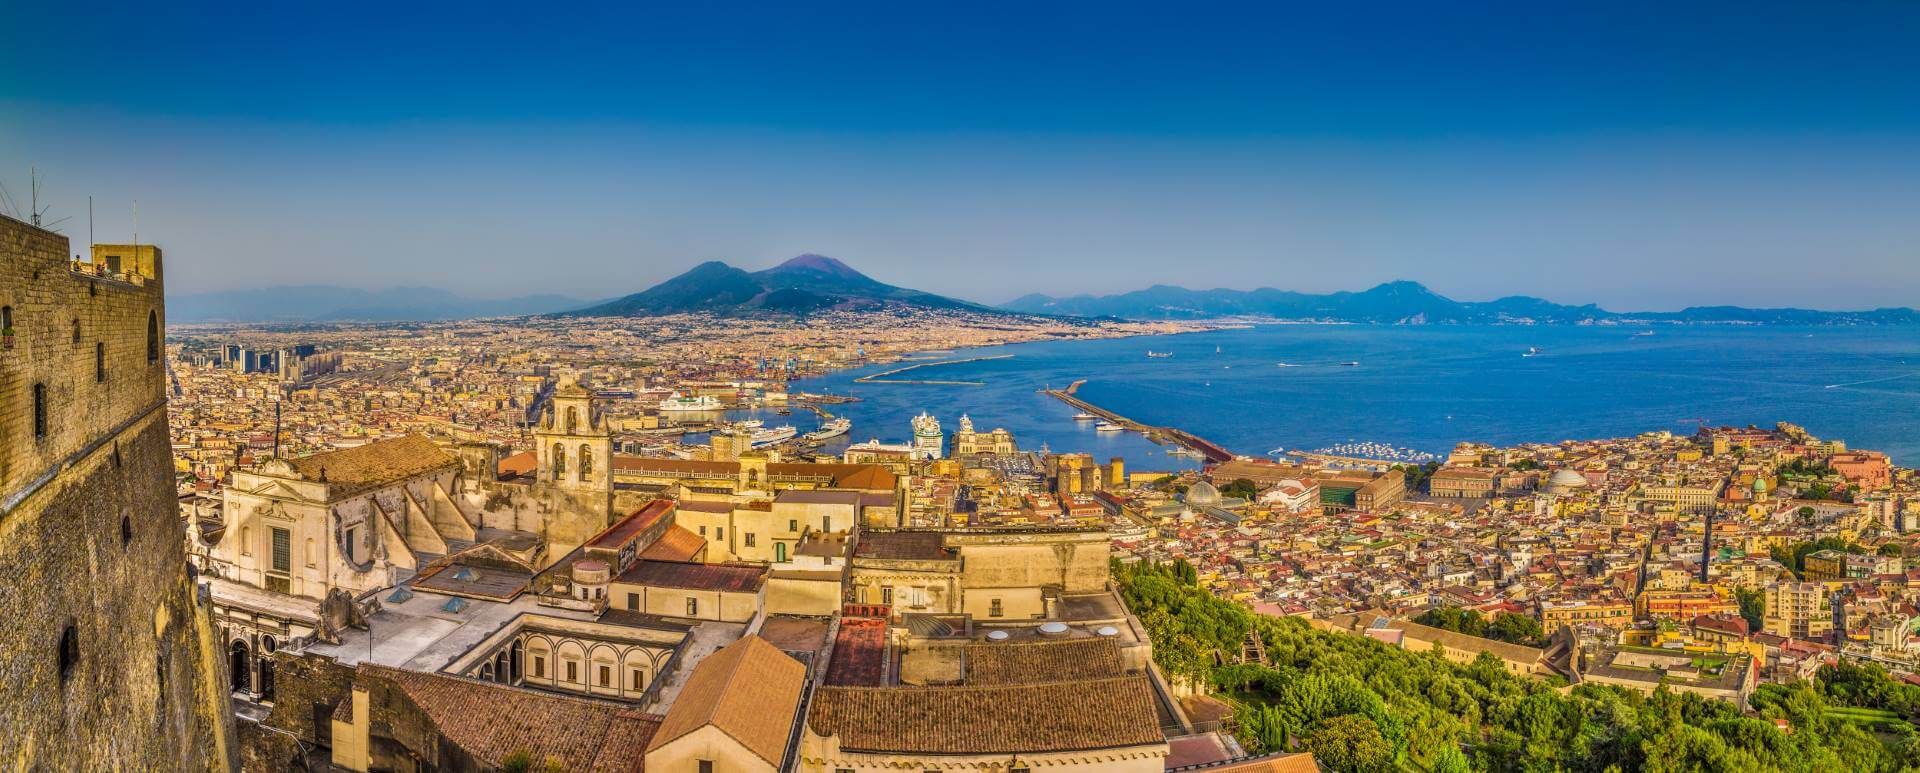 Palermo Termini Imerese to Naples